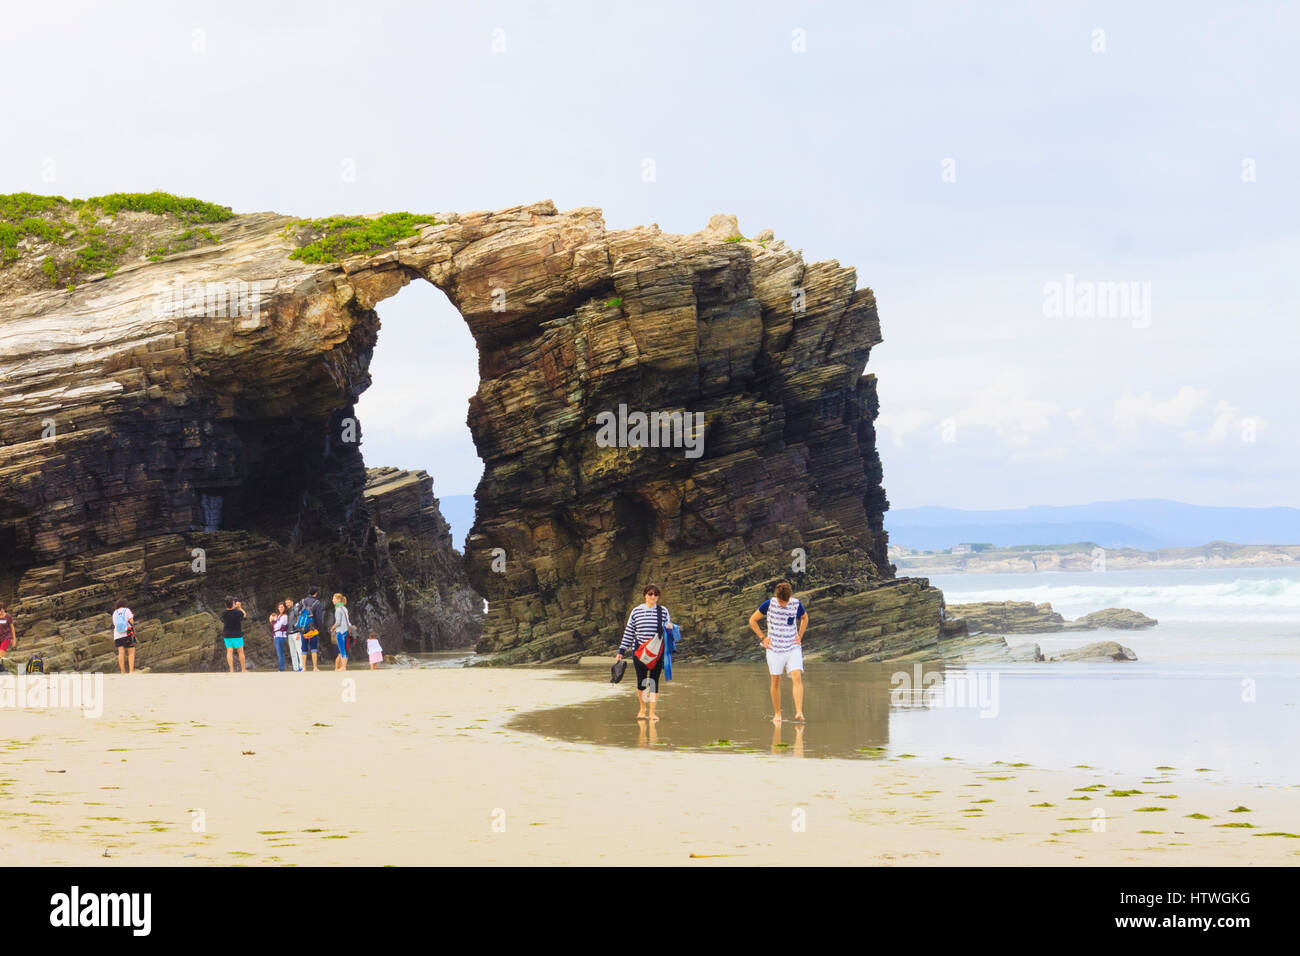 Les touristes par une arche de pierre à la plage des Cathédrales monument naturel à ribadeo lugo province, municipalité, Galice, Espagne, Europe Banque D'Images